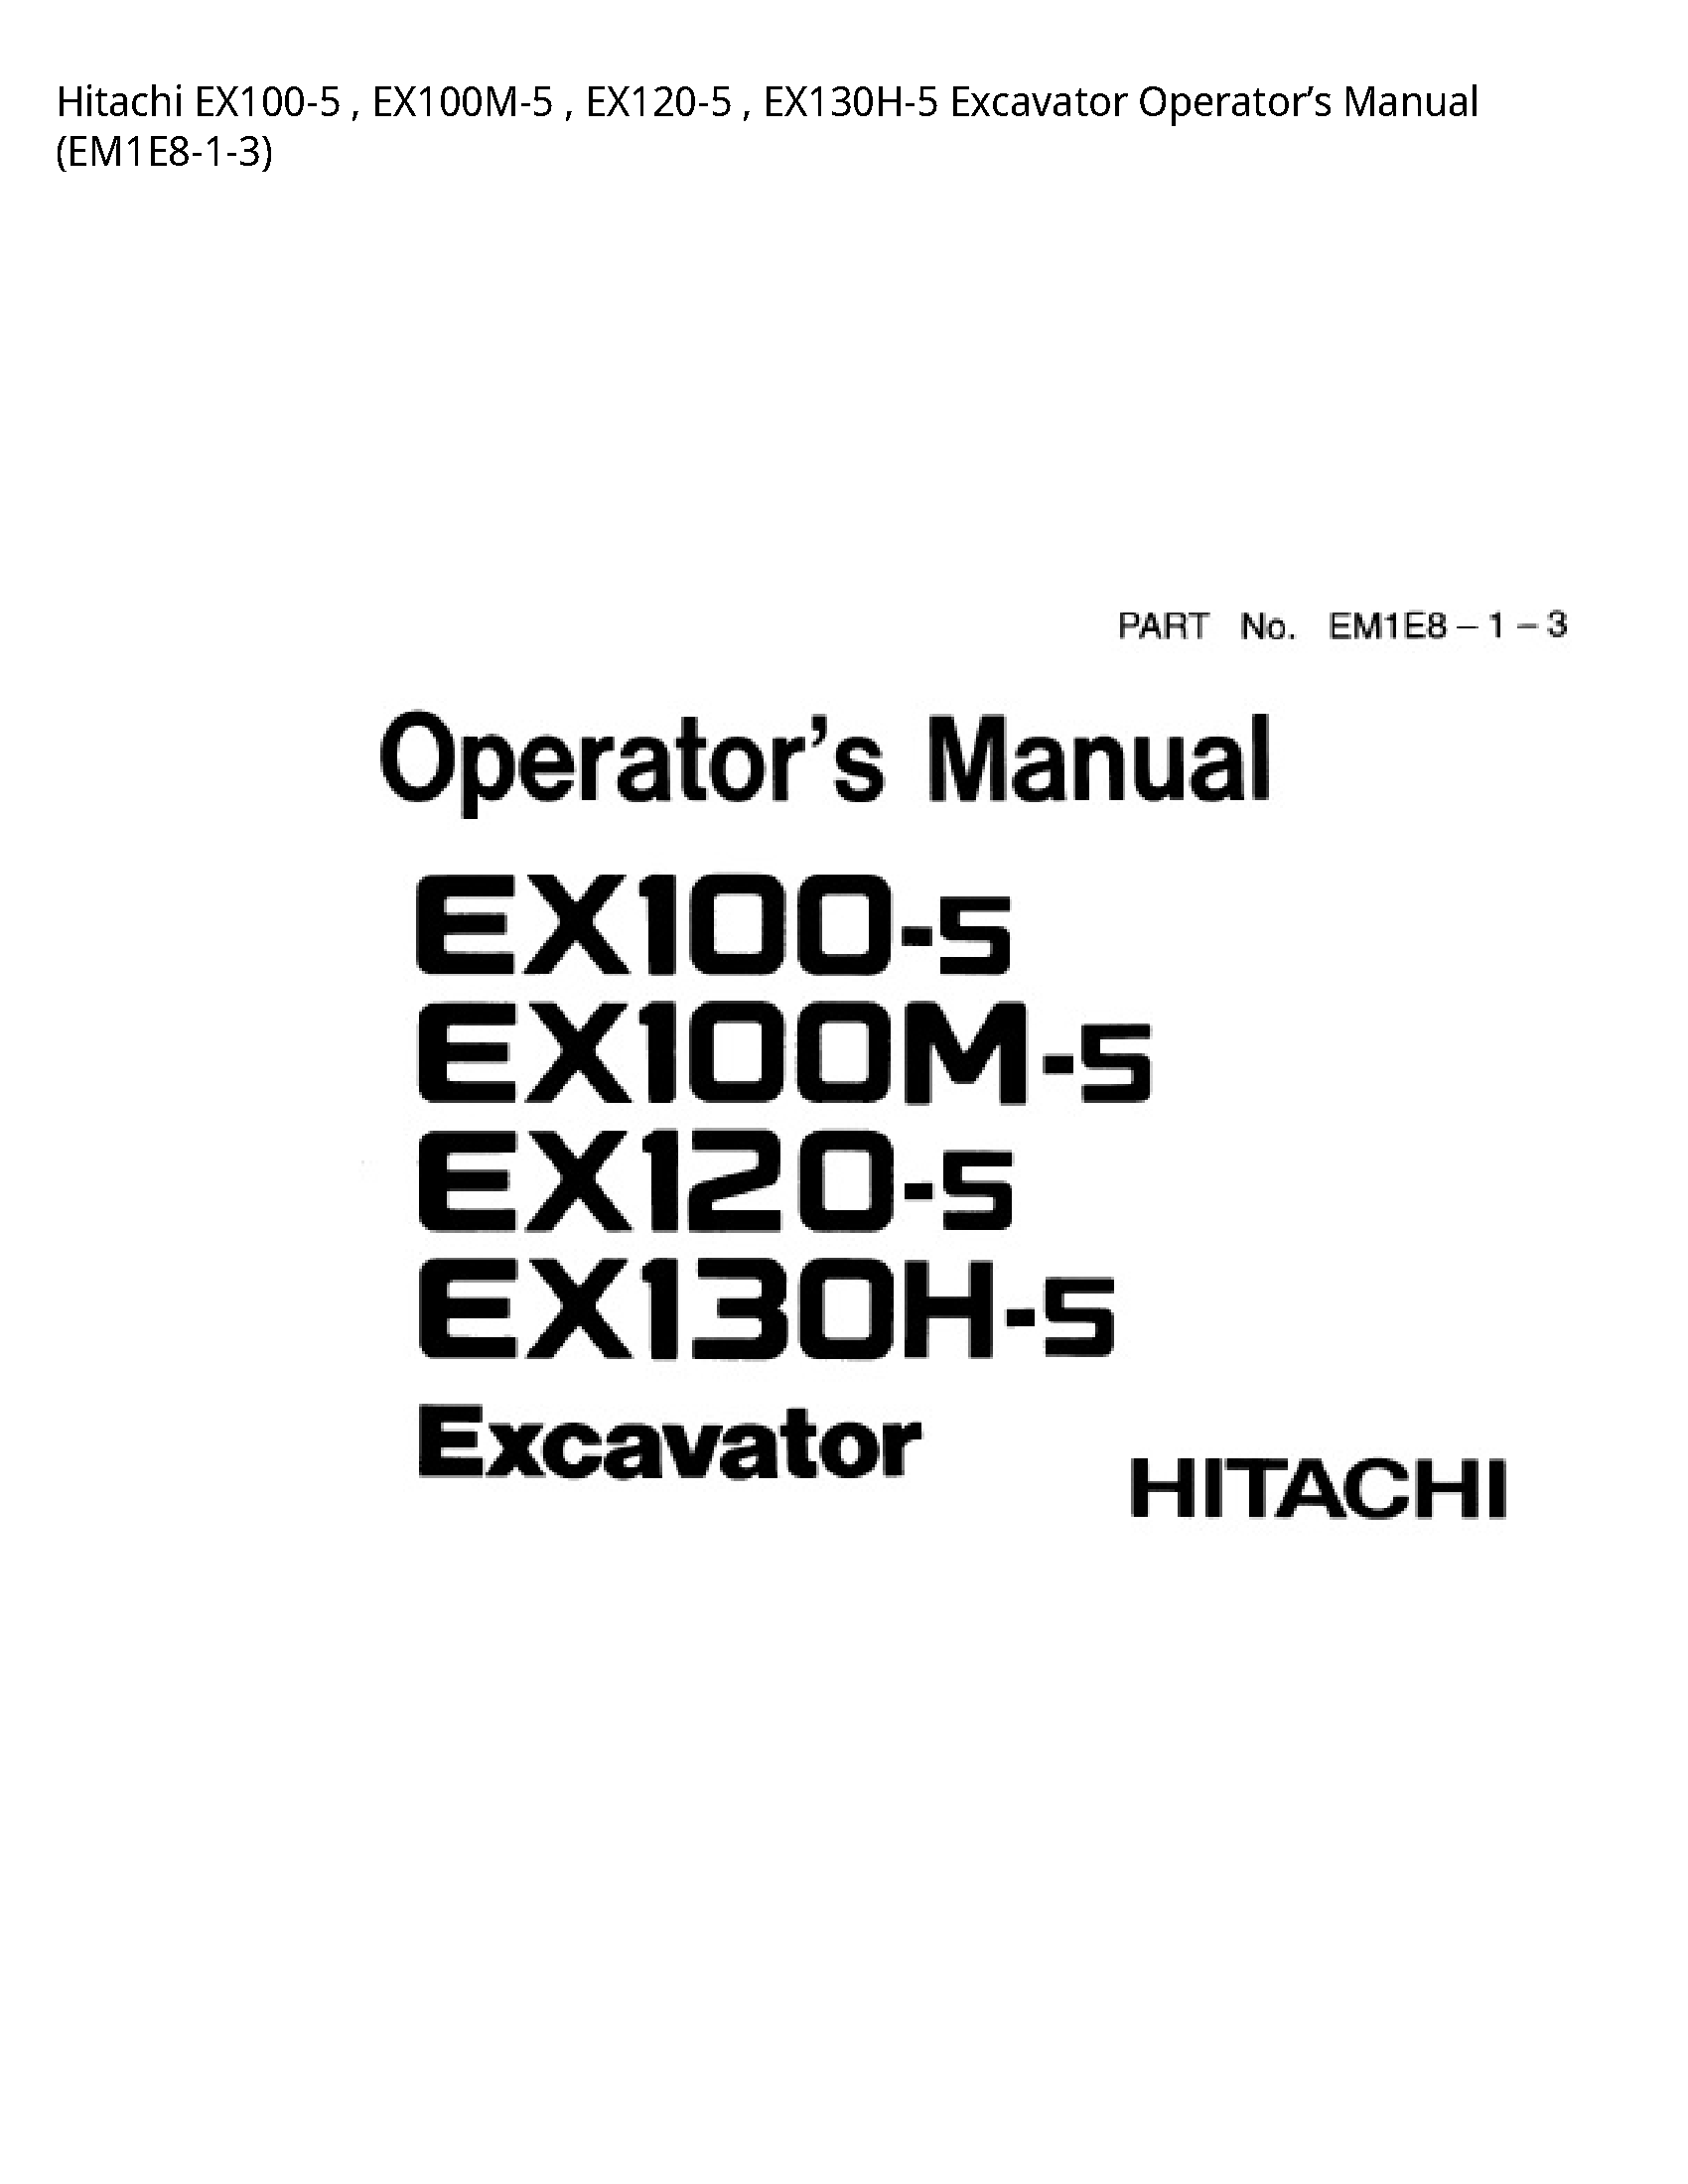 Hitachi EX100-5 Excavator Operator’s manual